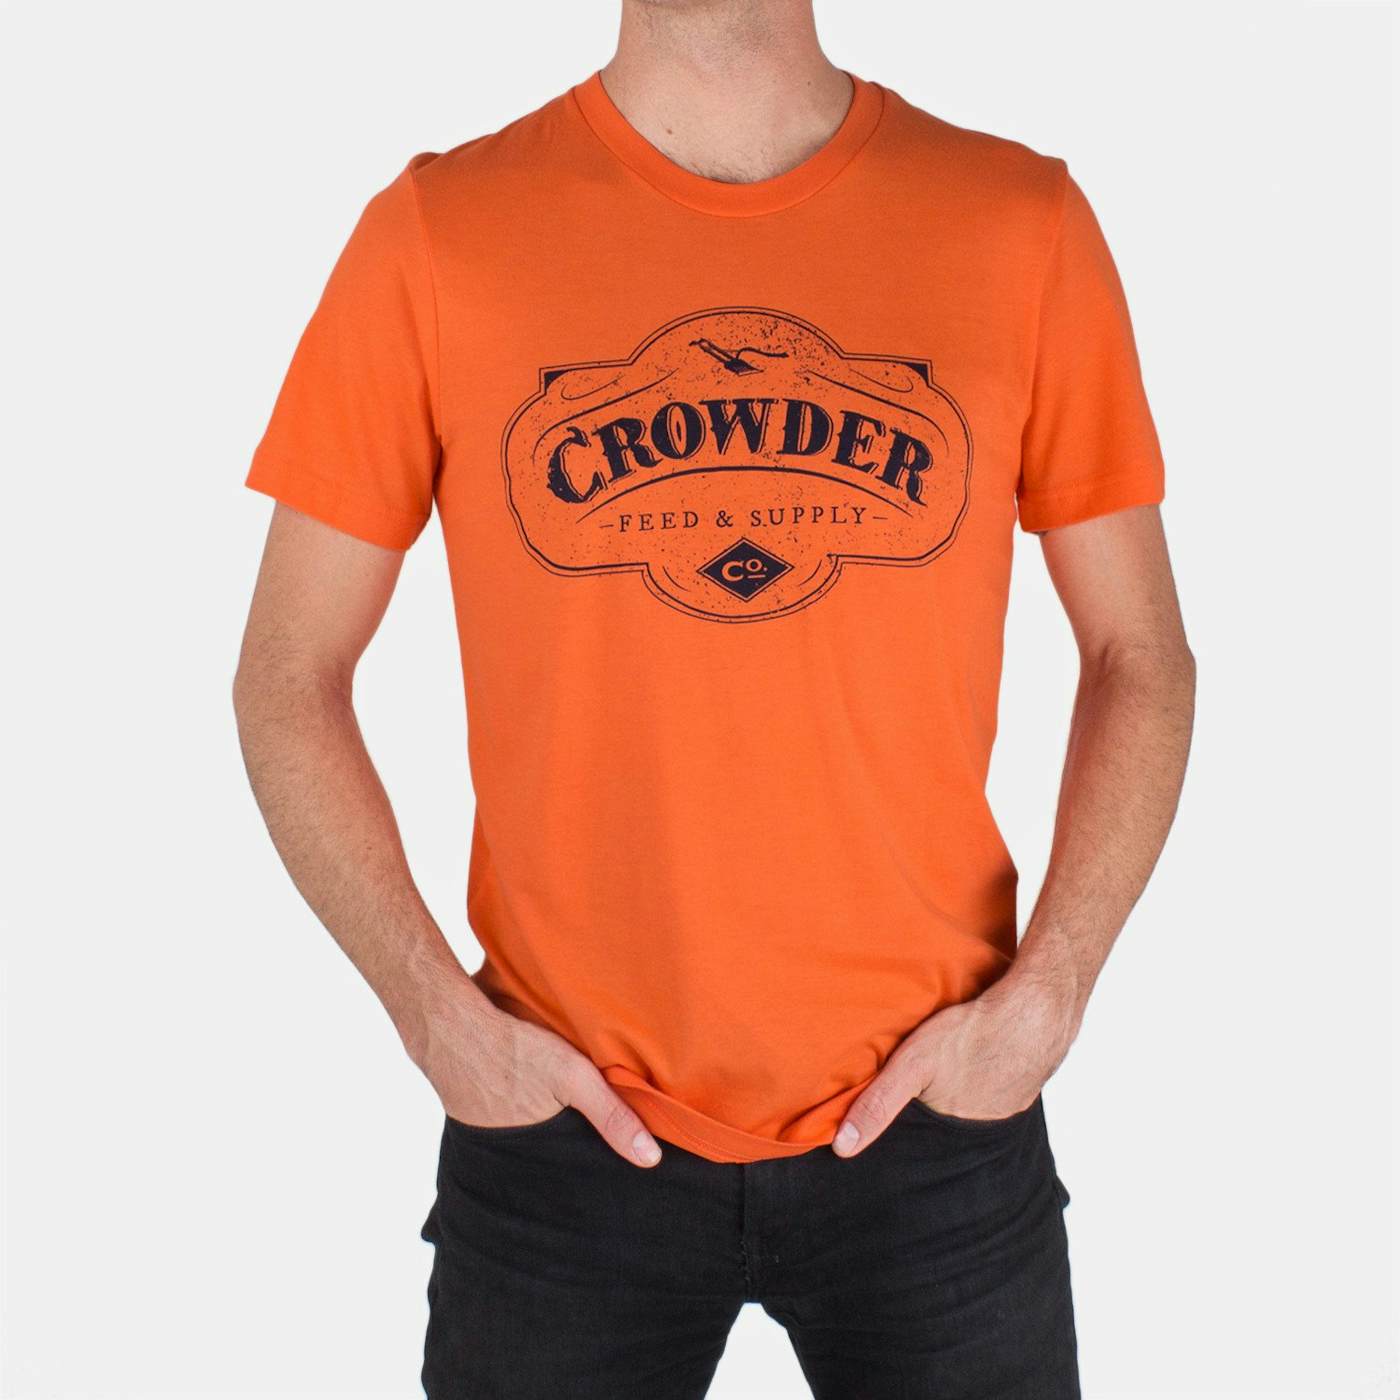 Crowder 'Feed & Supply' T-Shirt